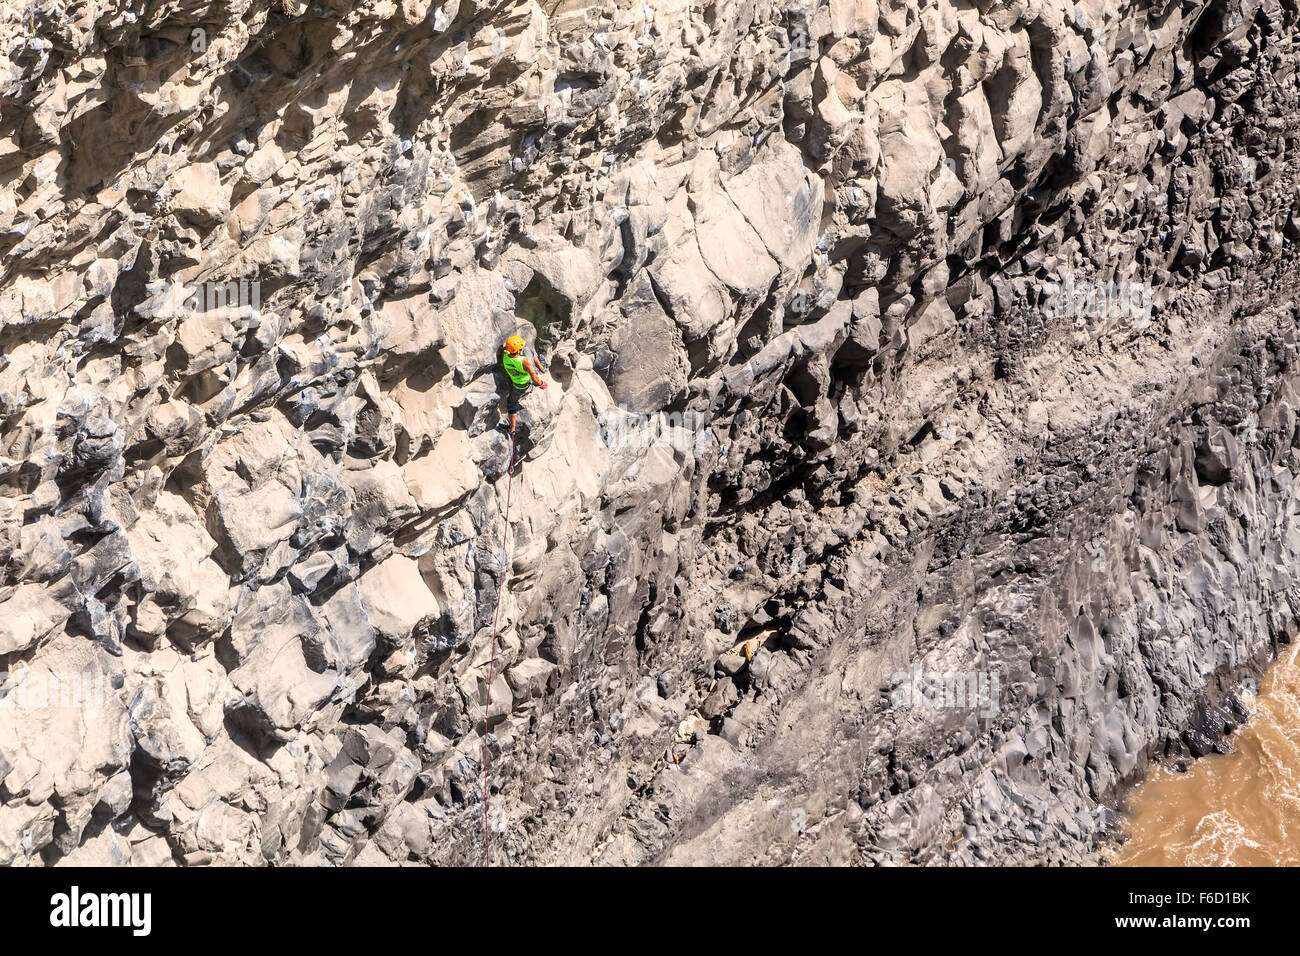 Basalt-Herausforderung des Tungurahua, Mann natürliche Fels-Kletterwand Stockfoto